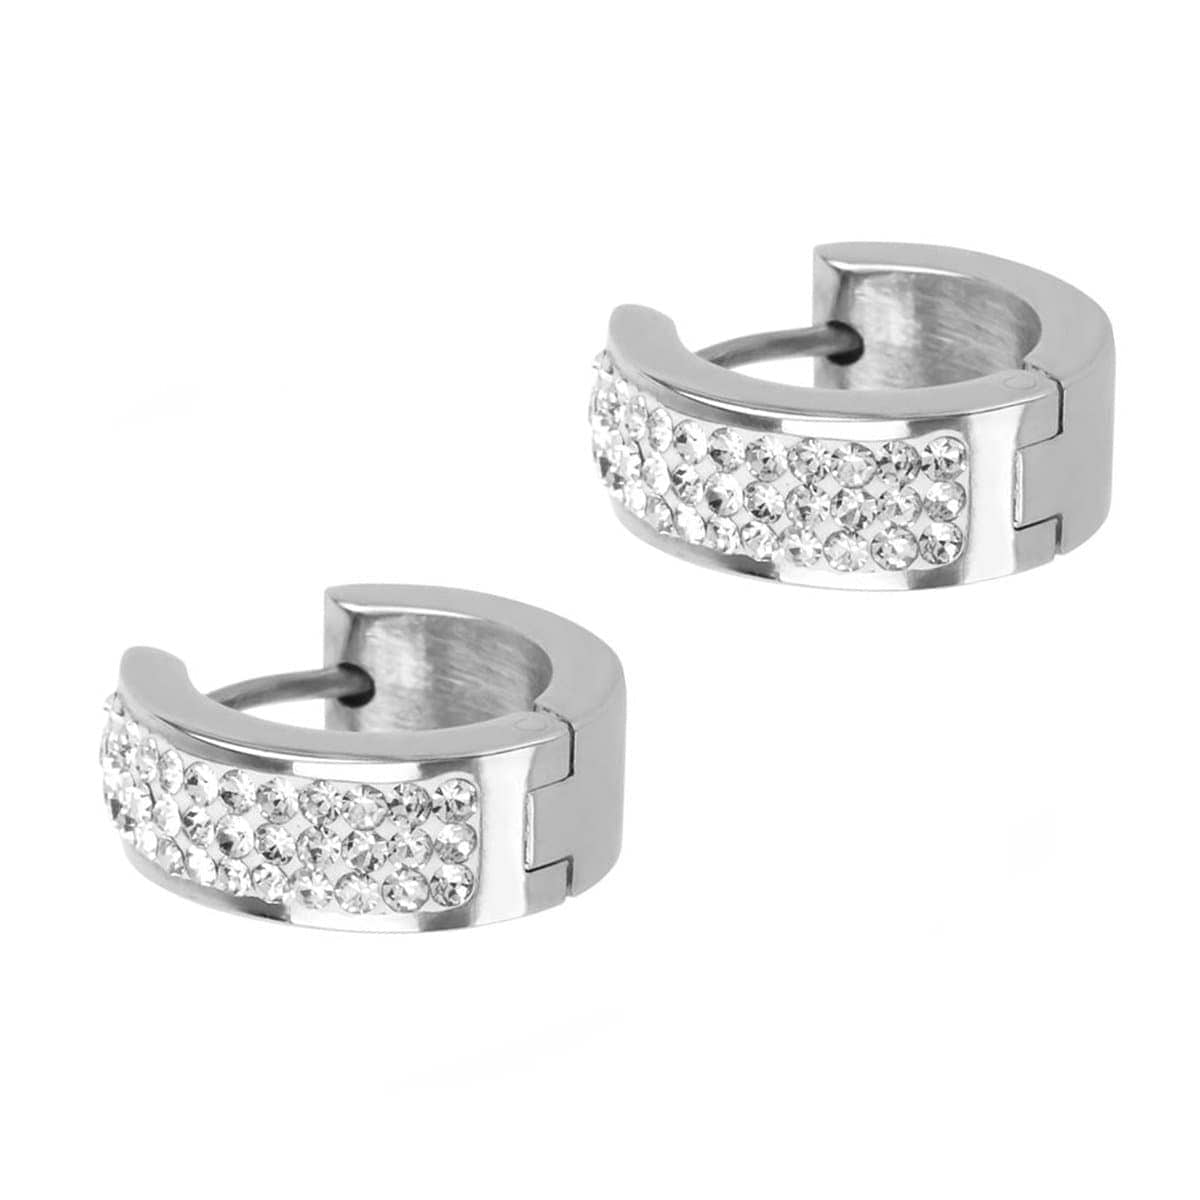 INOX JEWELRY Earrings Silver Tone Stainless Steel 17mm Triple Row White Crystal Huggies SSE5158